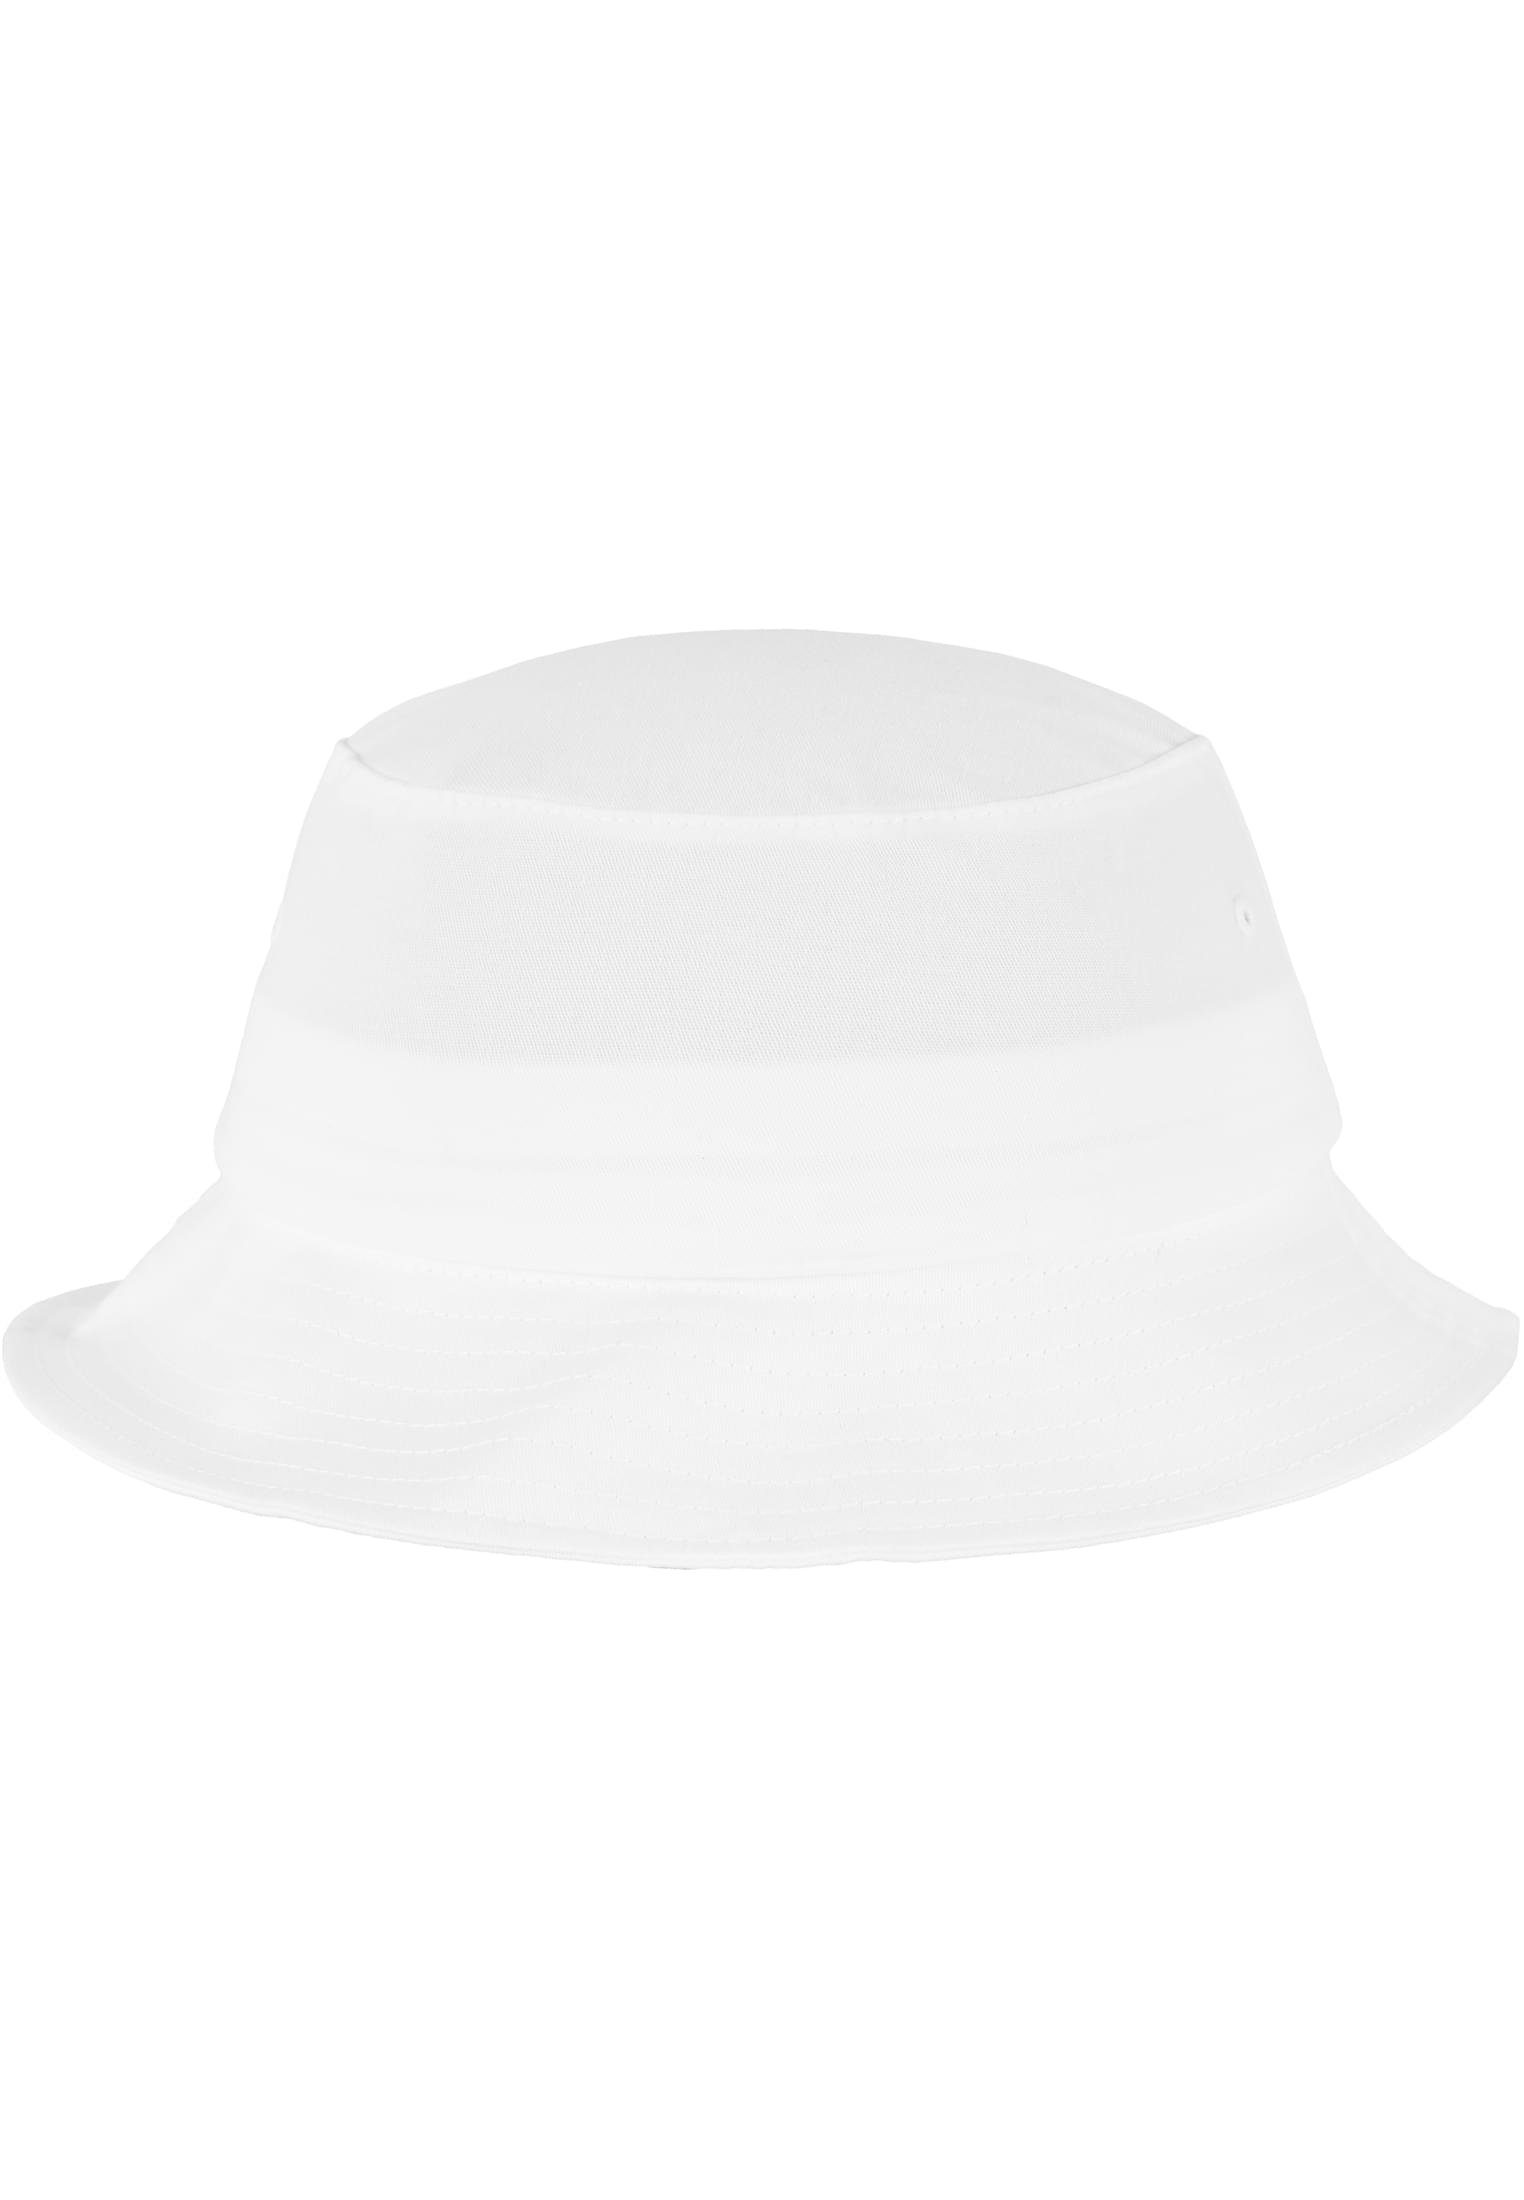 Flexfit Flex Accessoires Flexfit Twill white Cotton Cap Hat Bucket